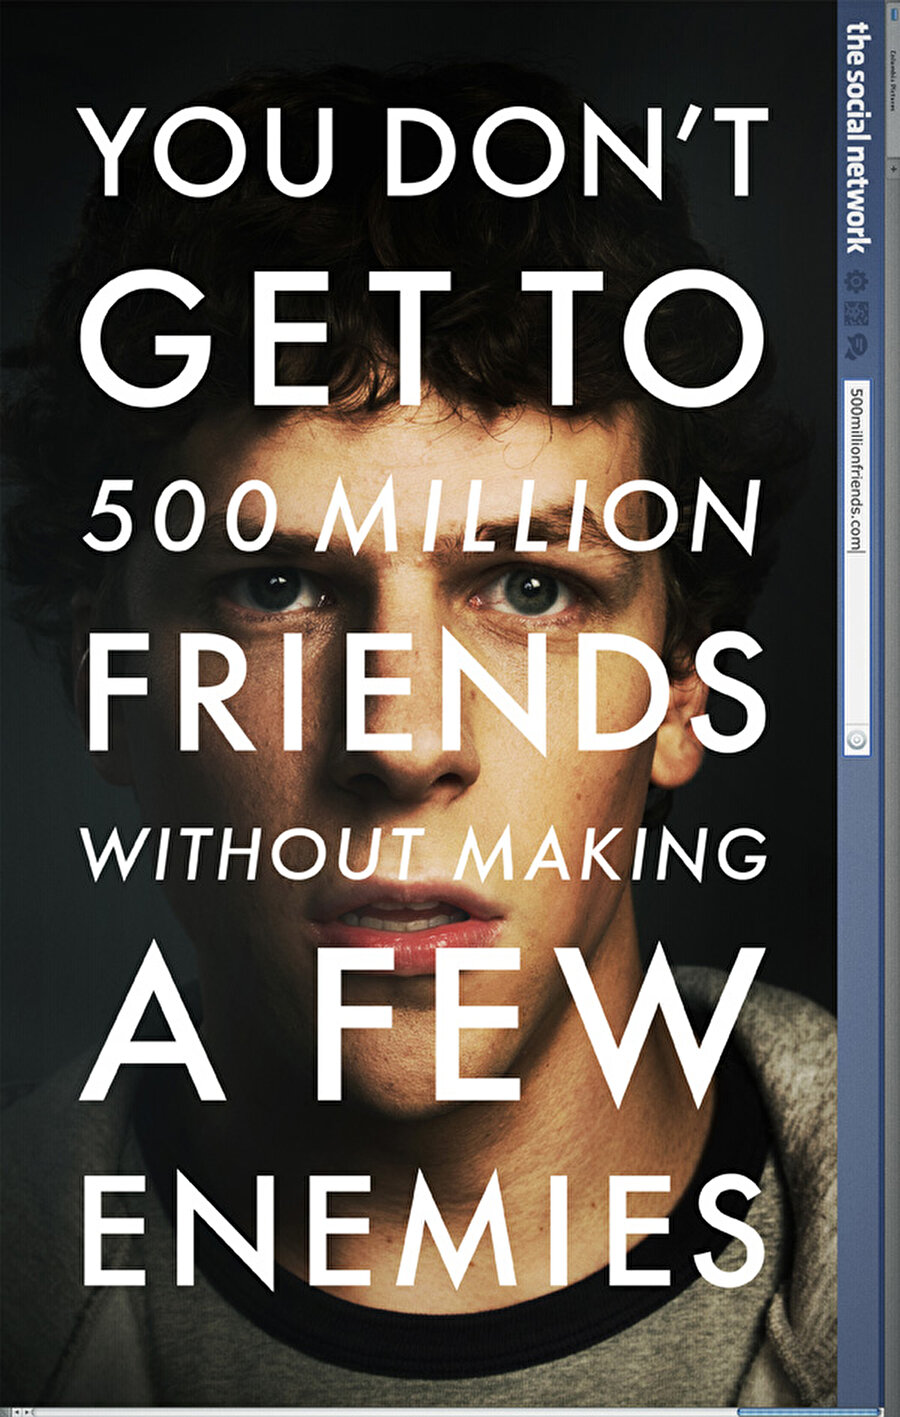 Bonus: 

                                    
                                    
                                    
                                    
                                    
                                    
                                    Facebook'un bu kurulum sürecini başından sonuna izlemek isteyen takipçilerimize "The Social Network" filmini öneririz :).
                                
                                
                                
                                
                                
                                
                                